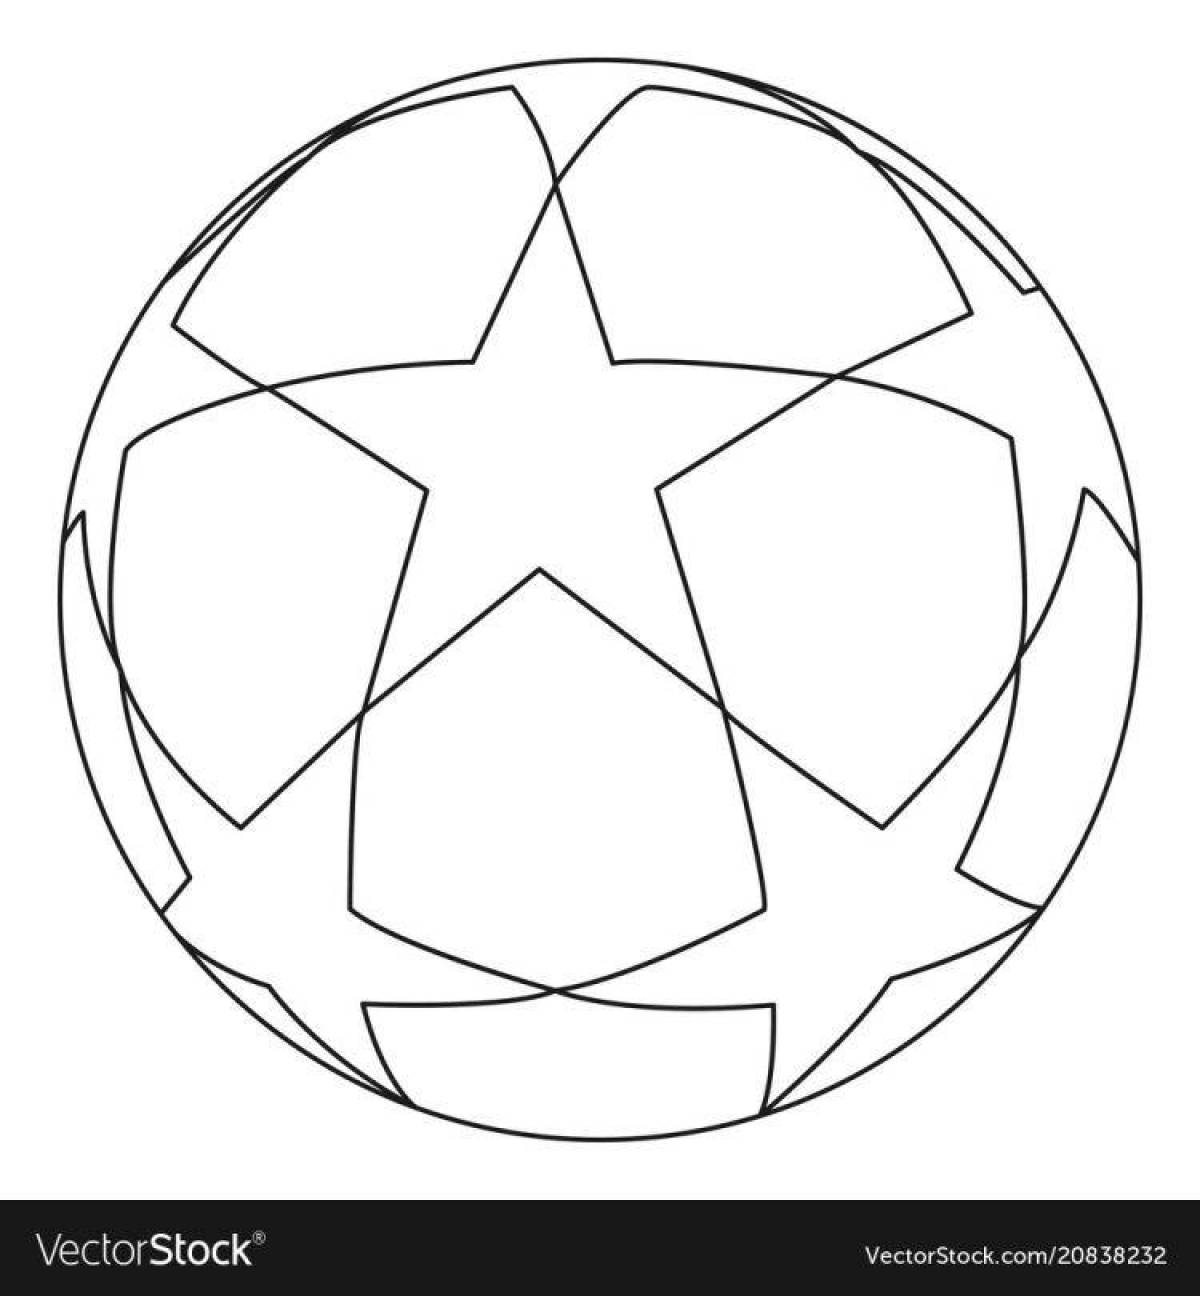 Игривая страница раскраски футбольного мяча для детей